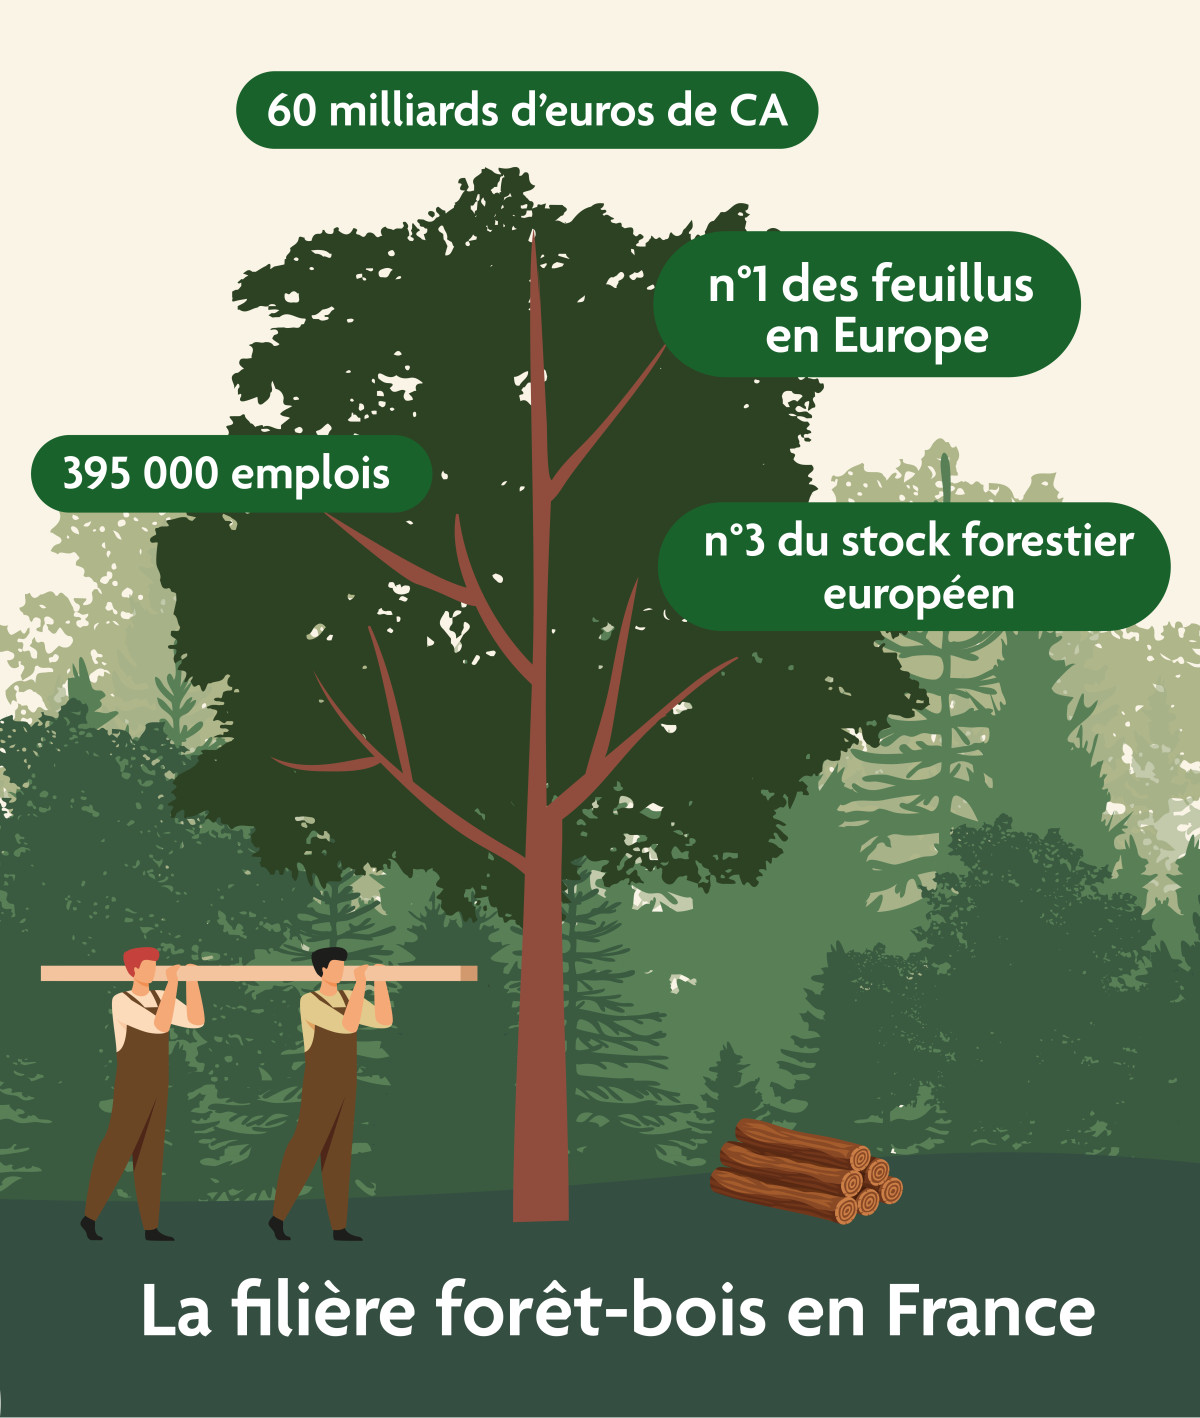 Le territoire de la forêt Retz veut recréer de l'emploi dans la filière bois